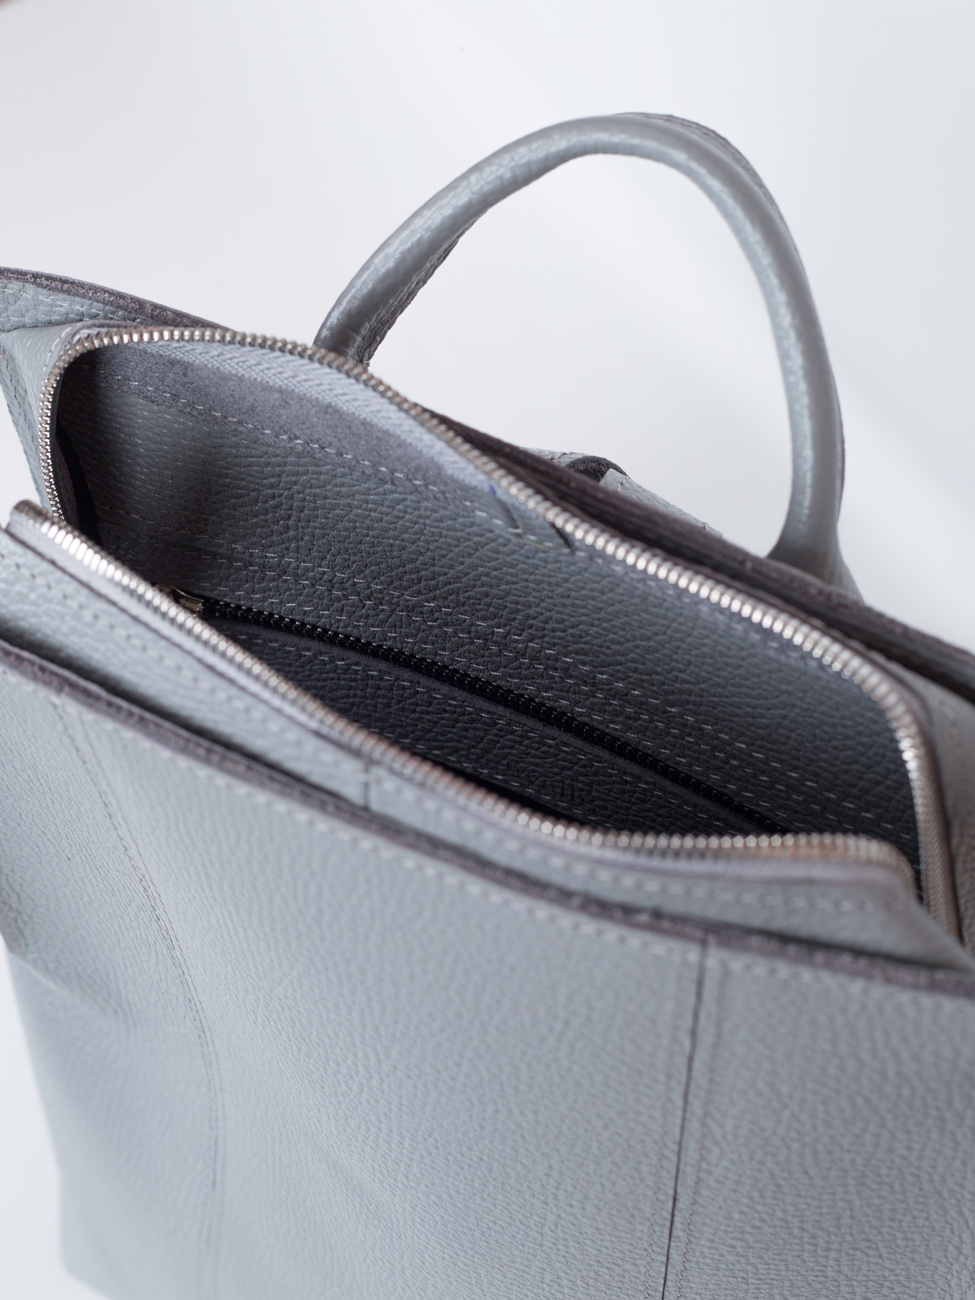 Женский рюкзак из натуральной кожи серый B014 grey grain